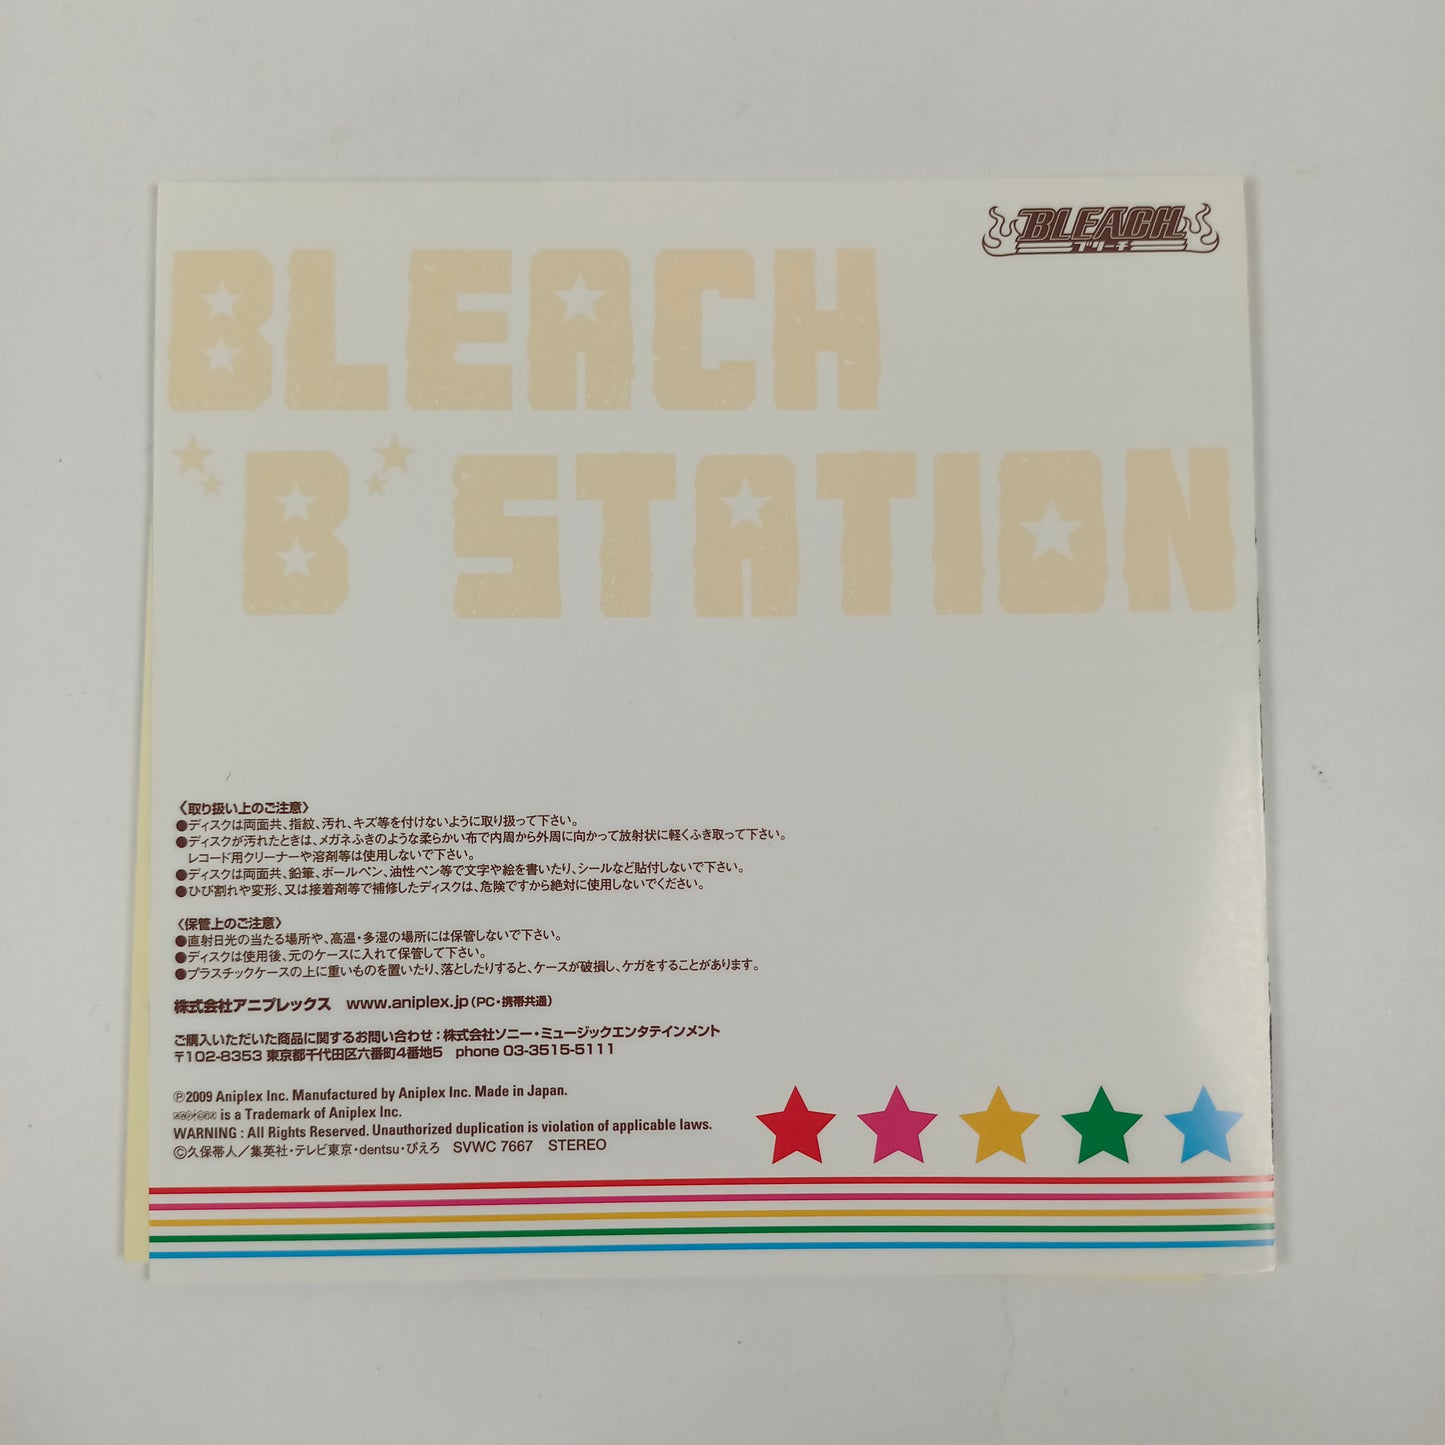 Bleach "B" Station Fourth Season Vol.1